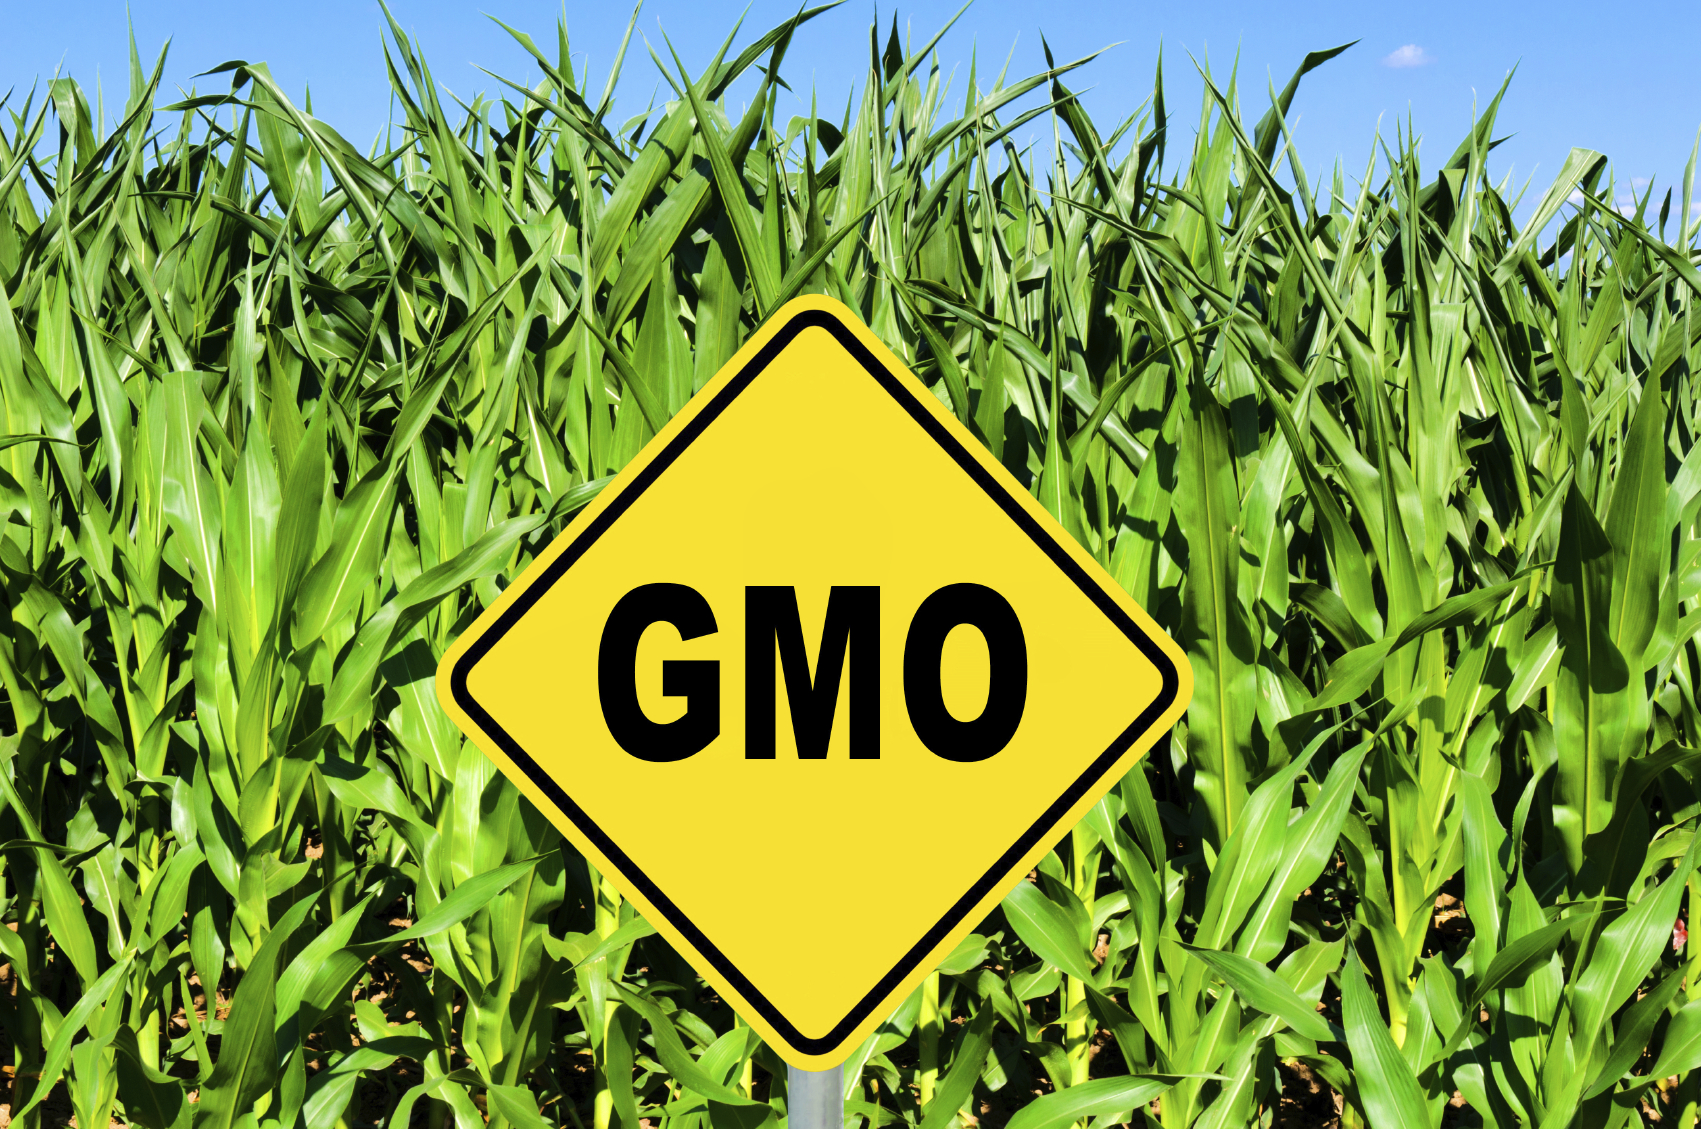 GMO sign in corn field